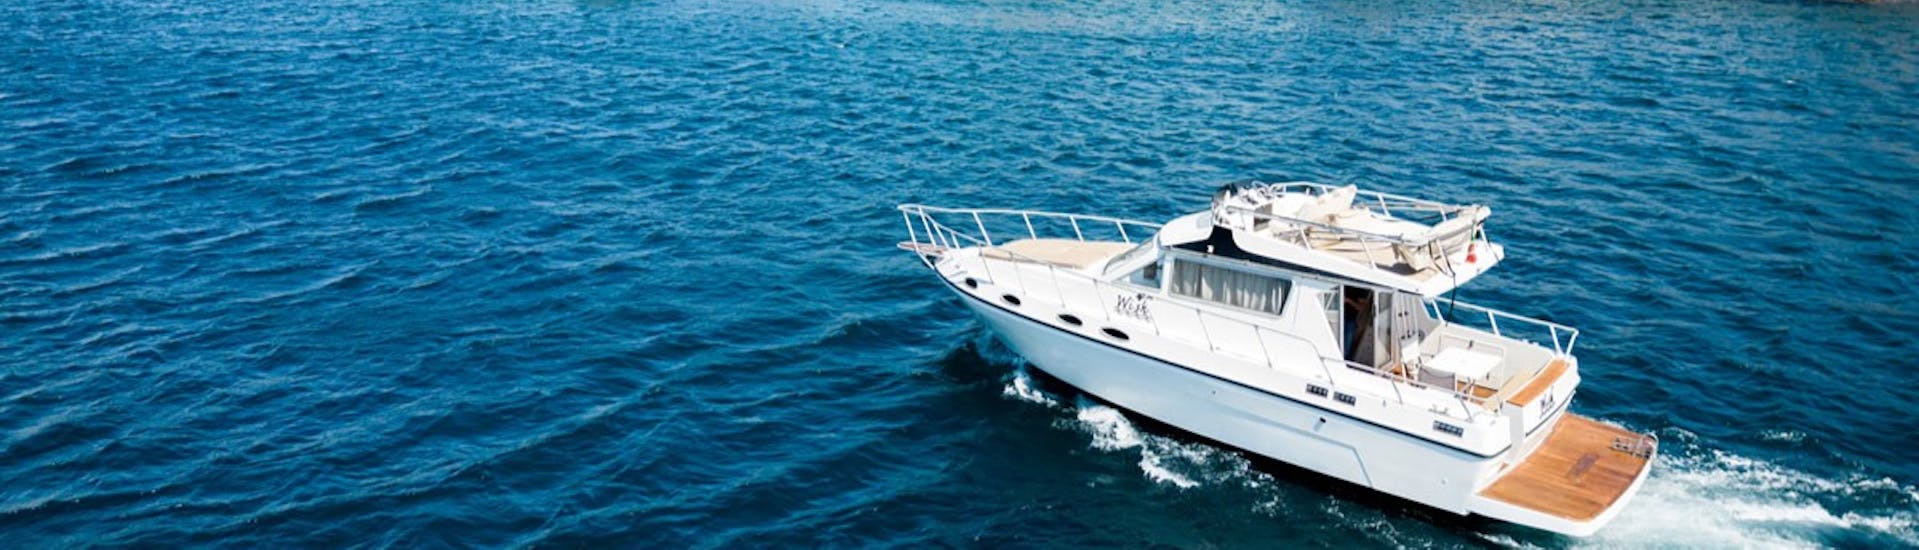 Le bateau utilisé pour l'Excursion privée en bateau de Catane à Taormina & Isola Bella avec Apéritif avec Wish Boat Rent Catania.